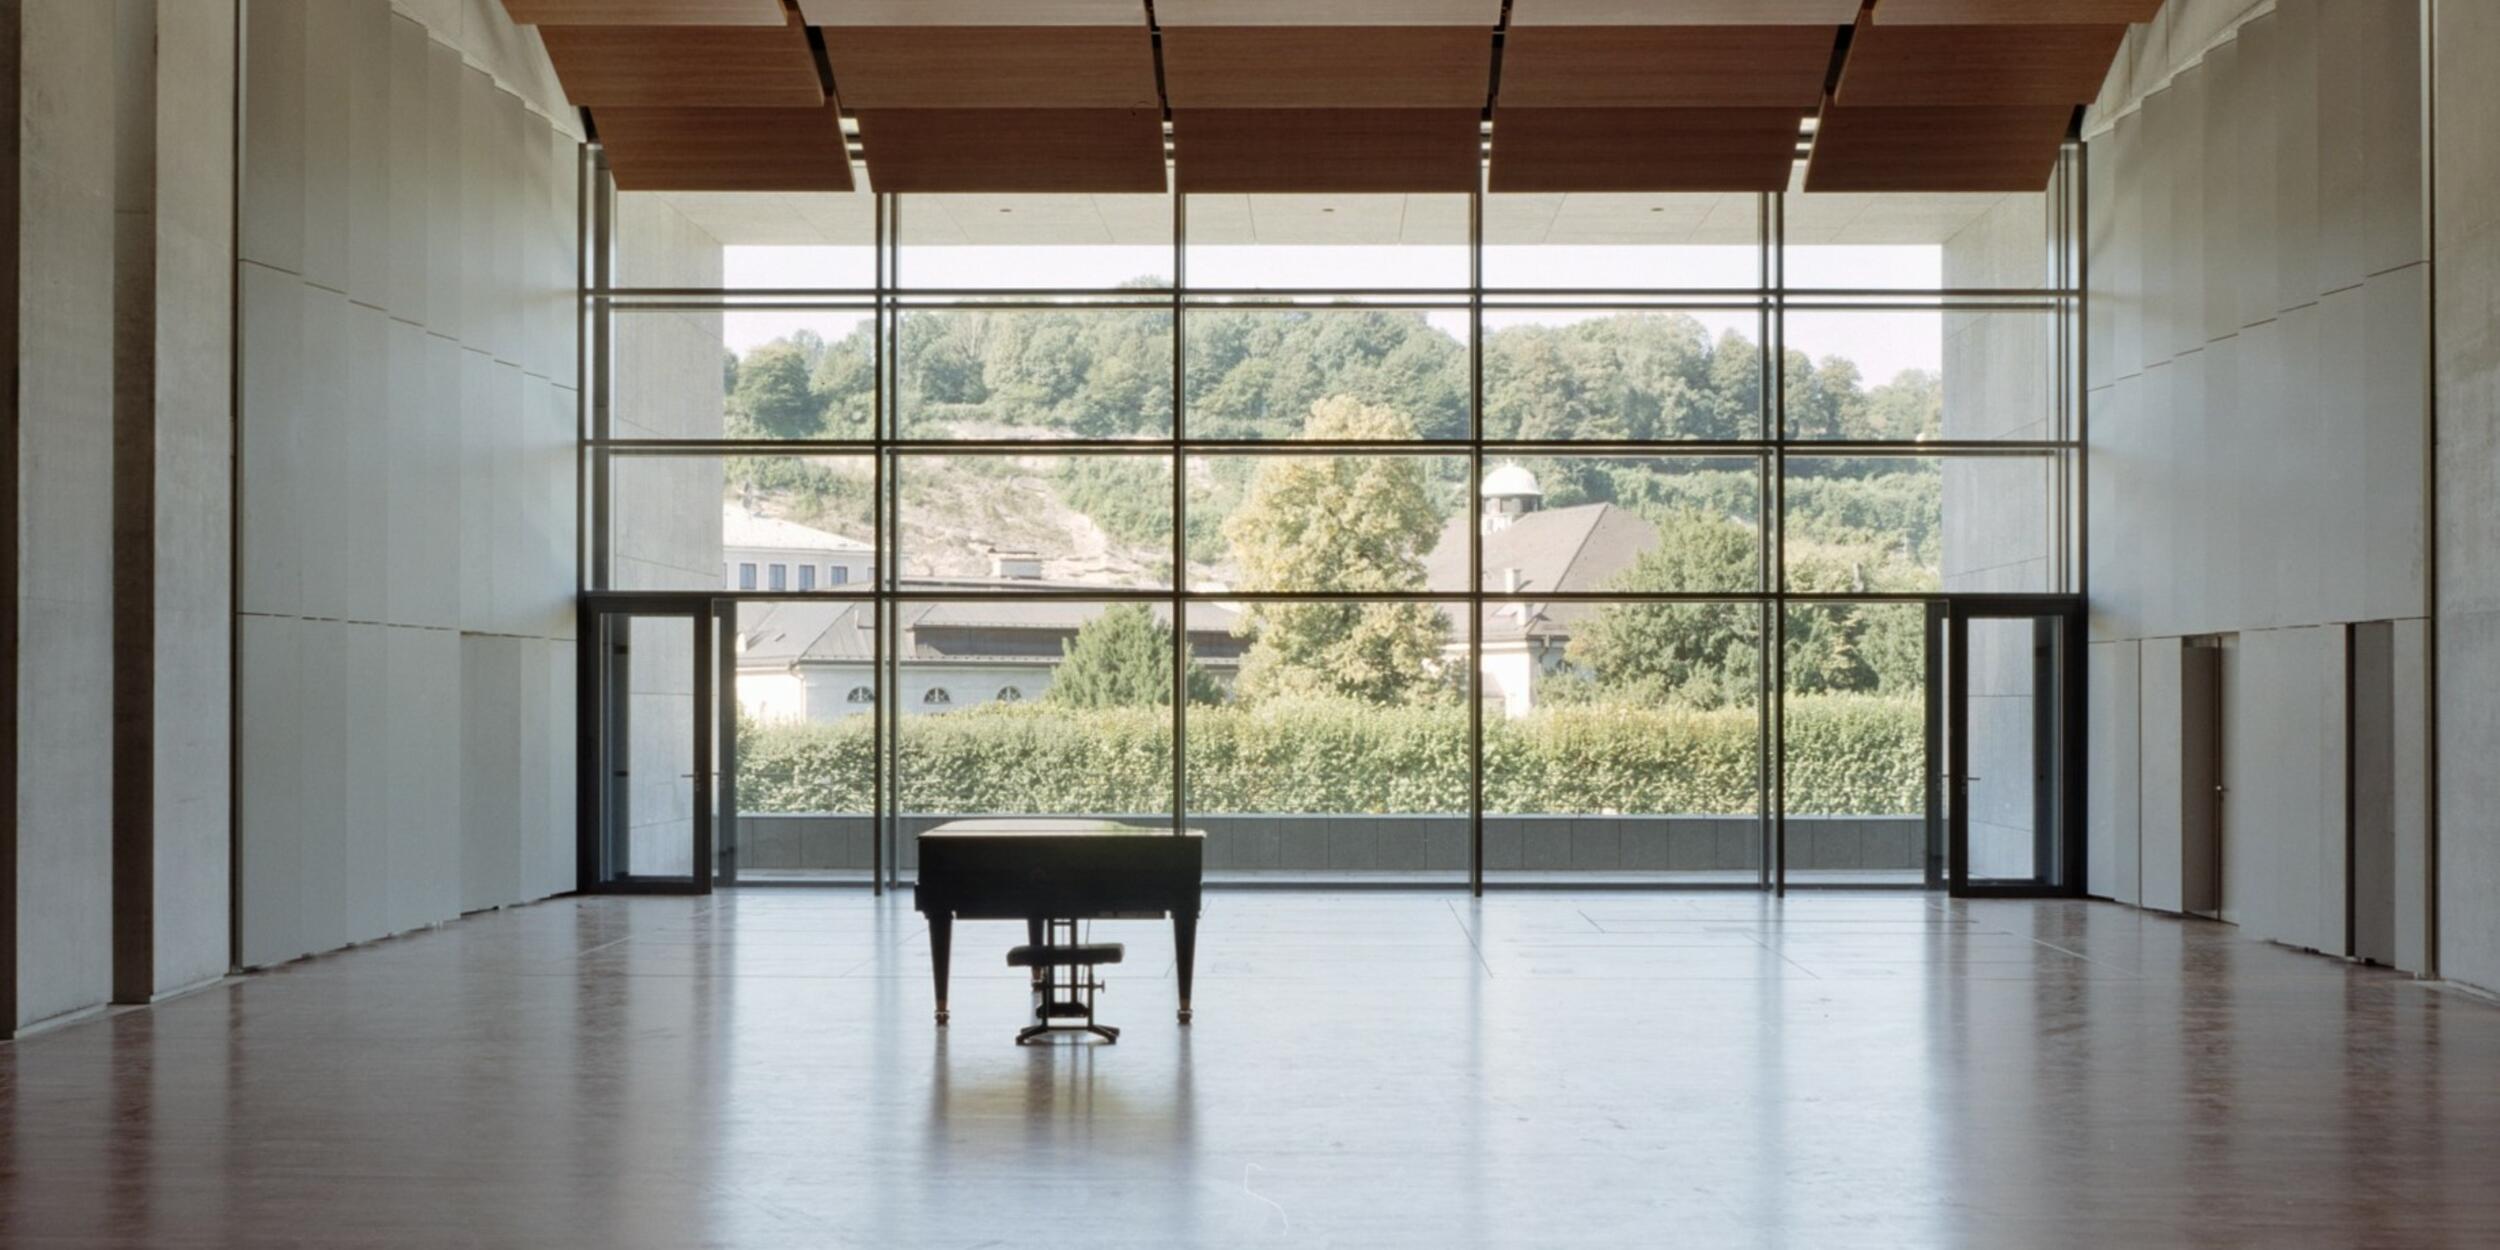 Leerer Solitär, Parkettboden, große Fensterfront, davor ein Piano | © Andrew Phelps